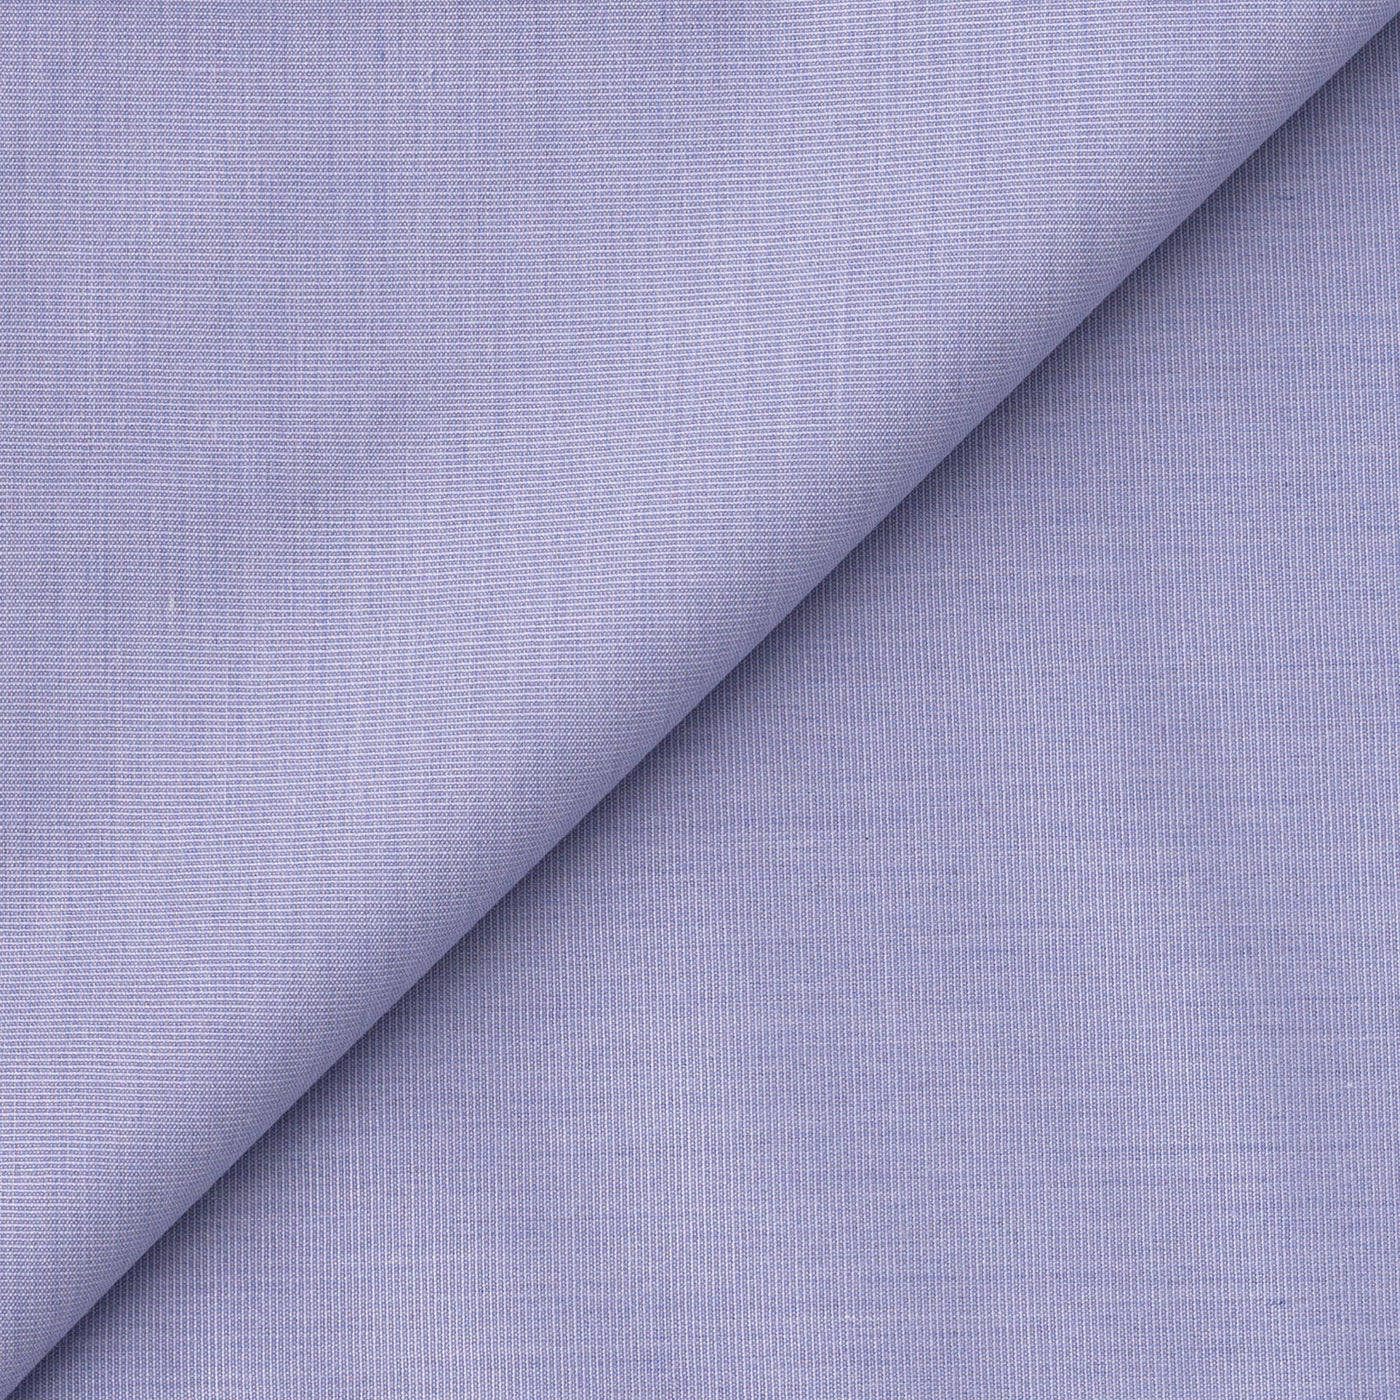 Fabric Pandit Cut Piece 1.25M (CUT PIECE) Pastel Violet Textured Cotton Men's Shirt Fabric (Width 58 inch)